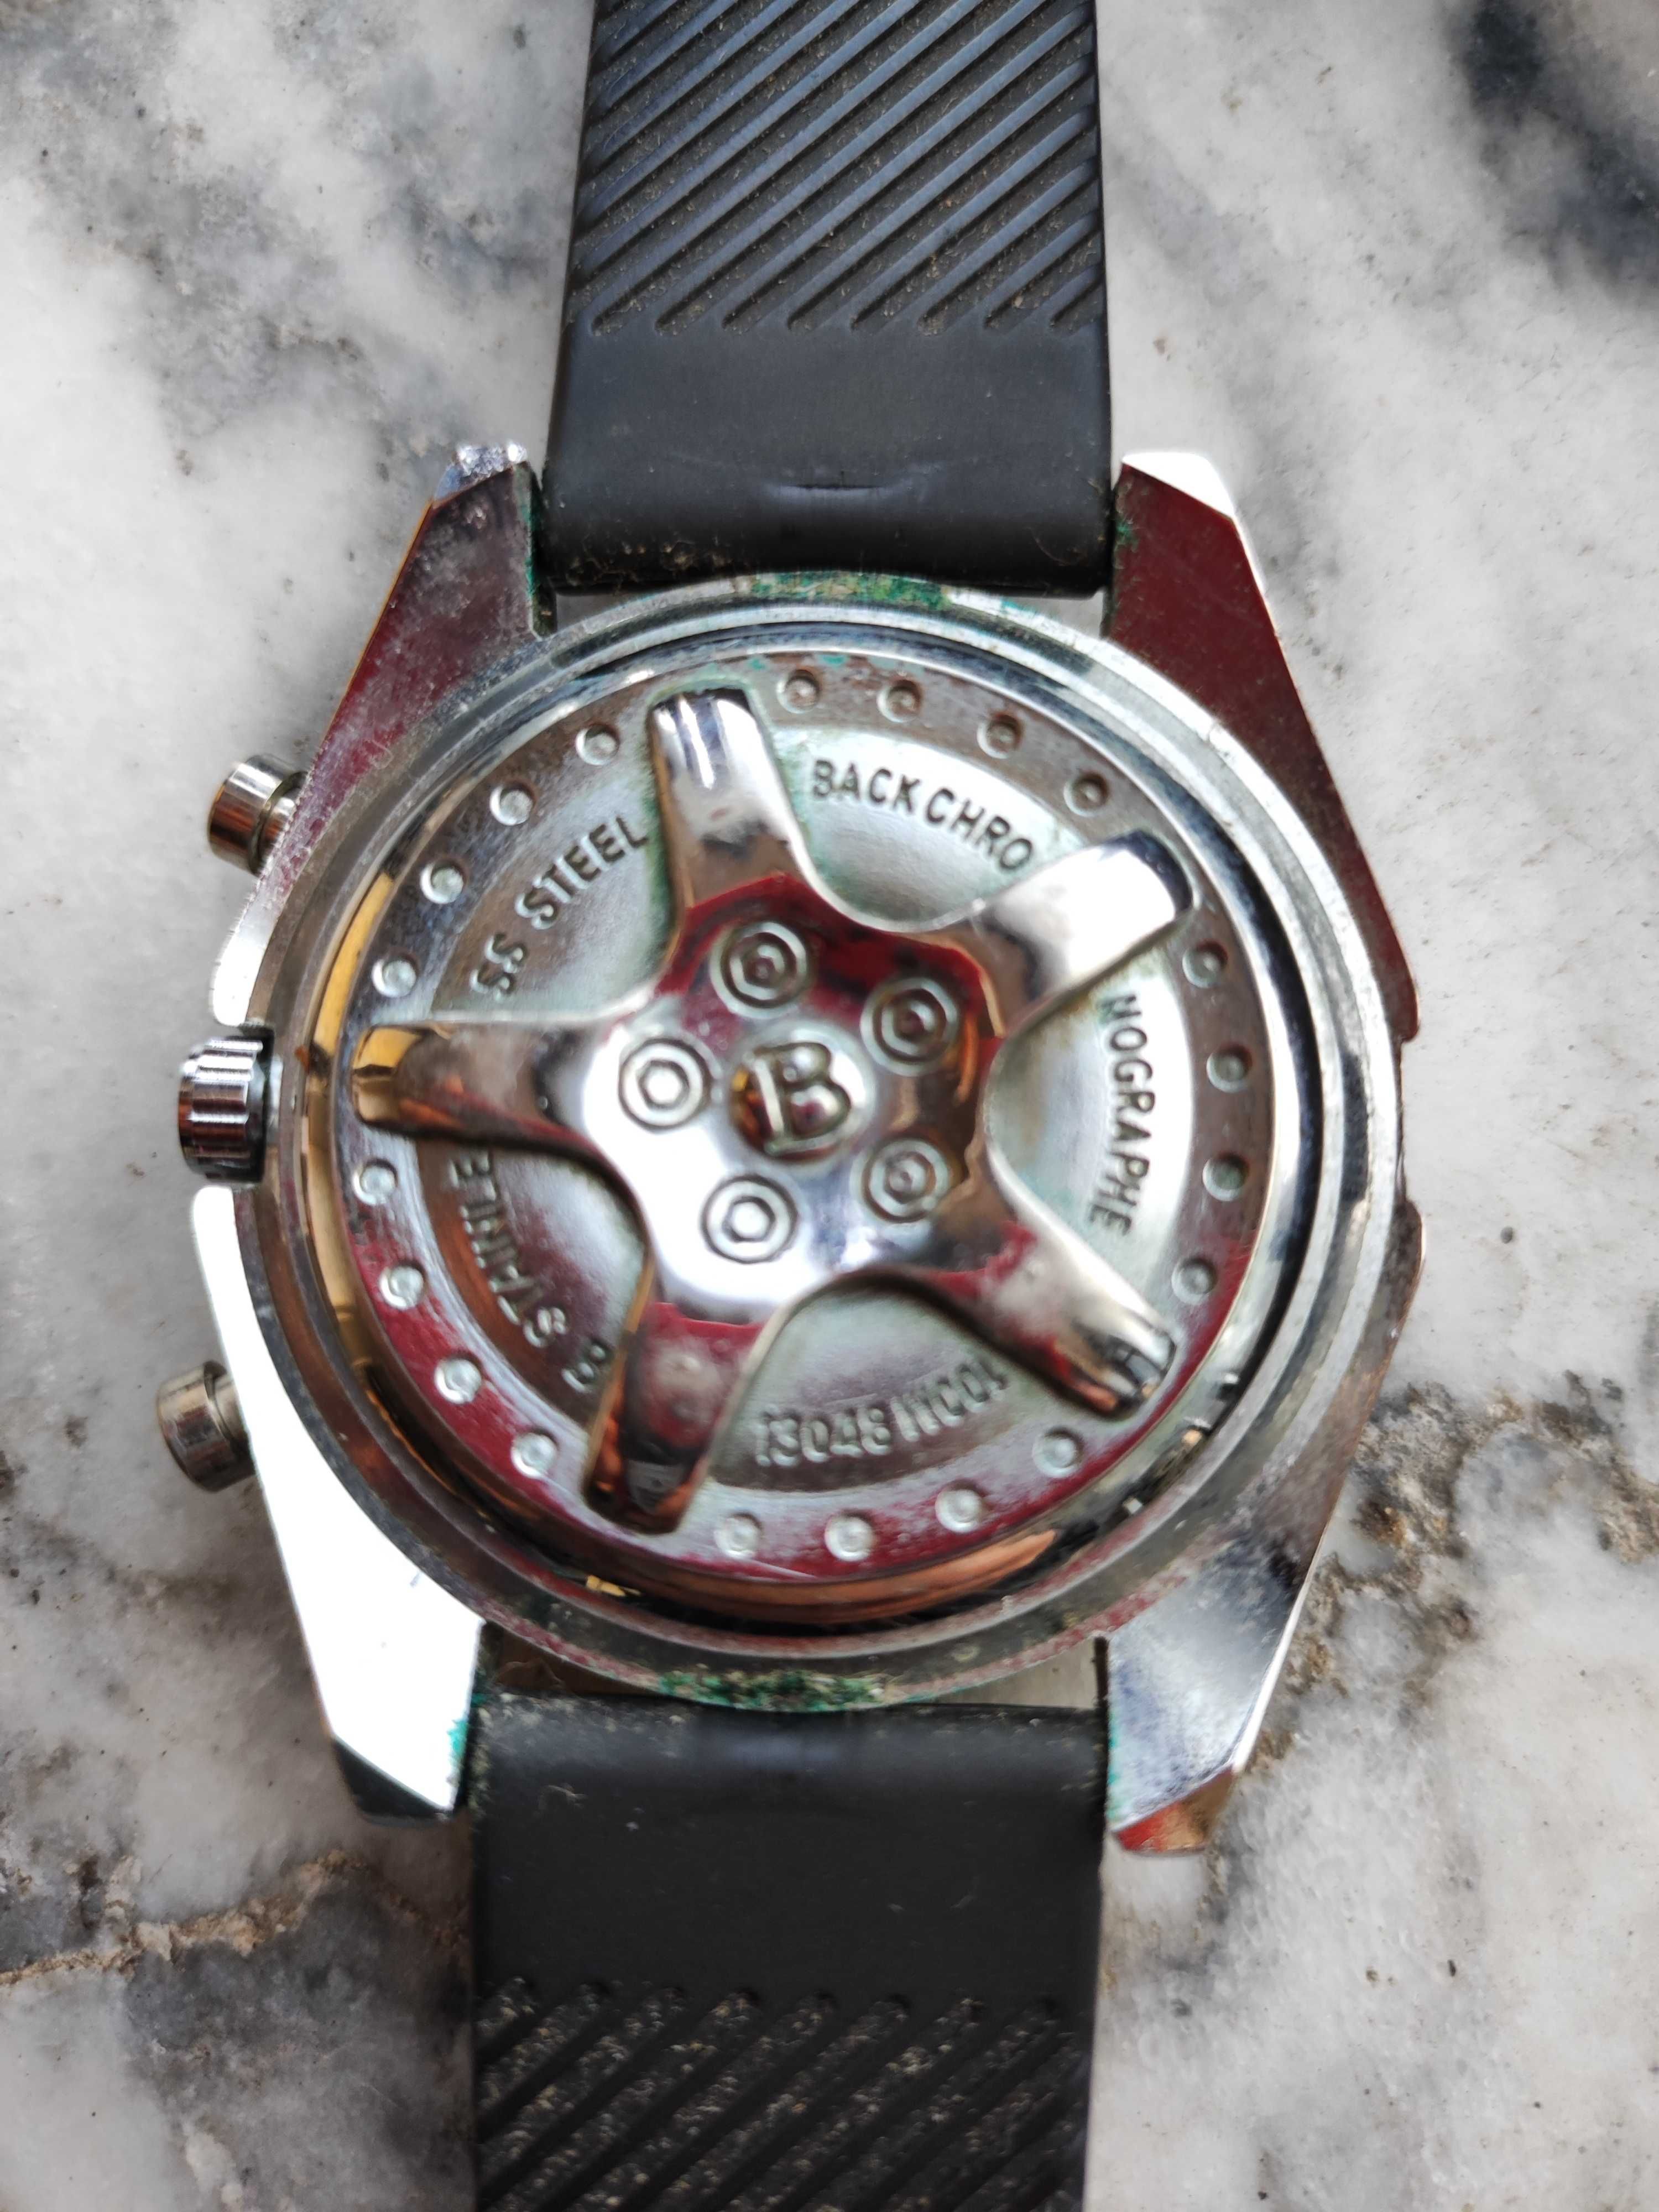 Relógio Breitling